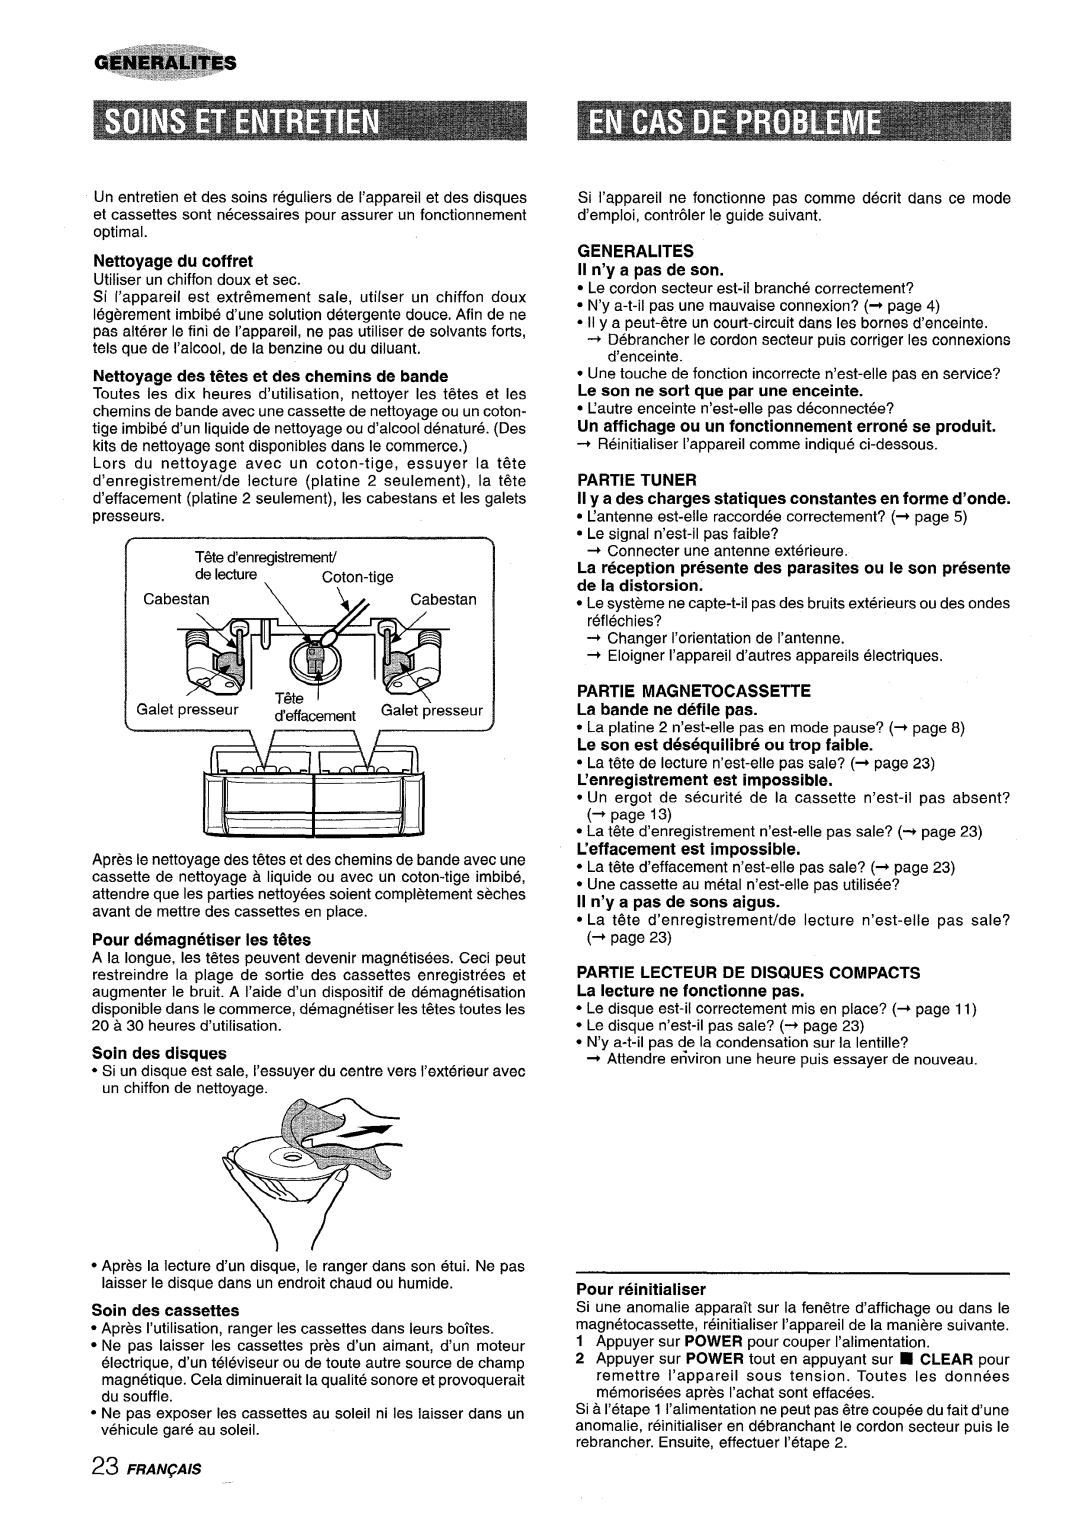 Sony NSX-MT320 manual Pour demagnetiser Ies t&es, Un affichage ou un fonctionnement errone se produit, Nettoyage du coffret 